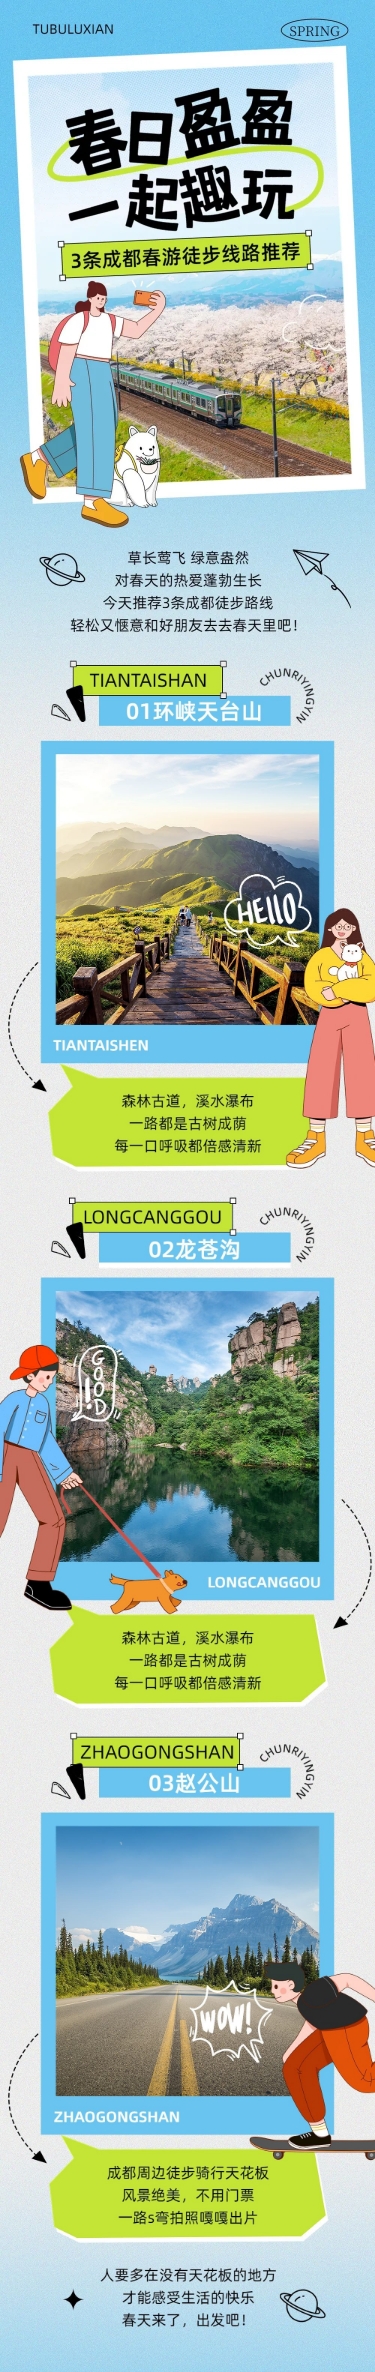 清爽风春游旅游路线宣传微信公众号文章长图预览效果